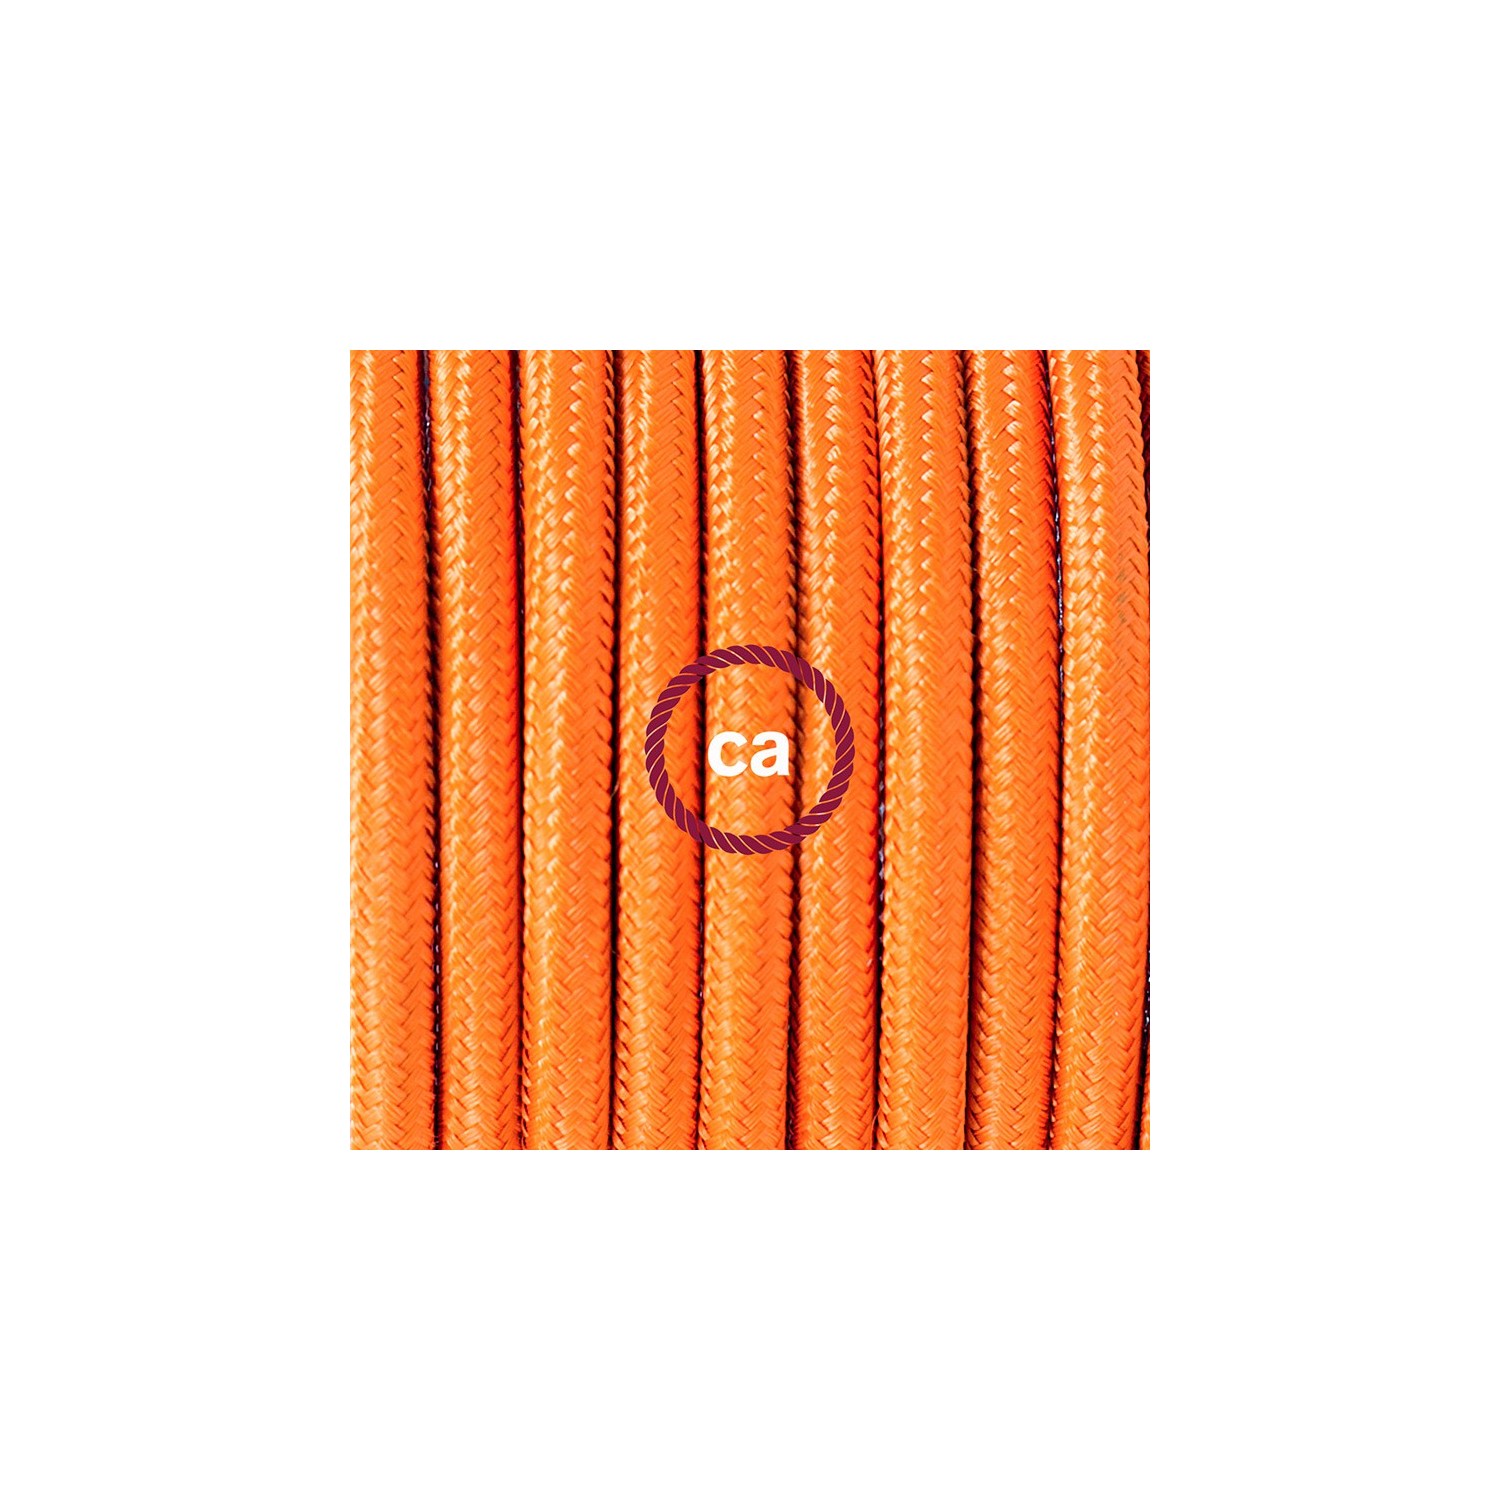 Zuleitung für Tischleuchten RM15 Orange Seideneffekt 1,80 m. Wählen Sie aus drei Farben bei Schalter und Stecke.